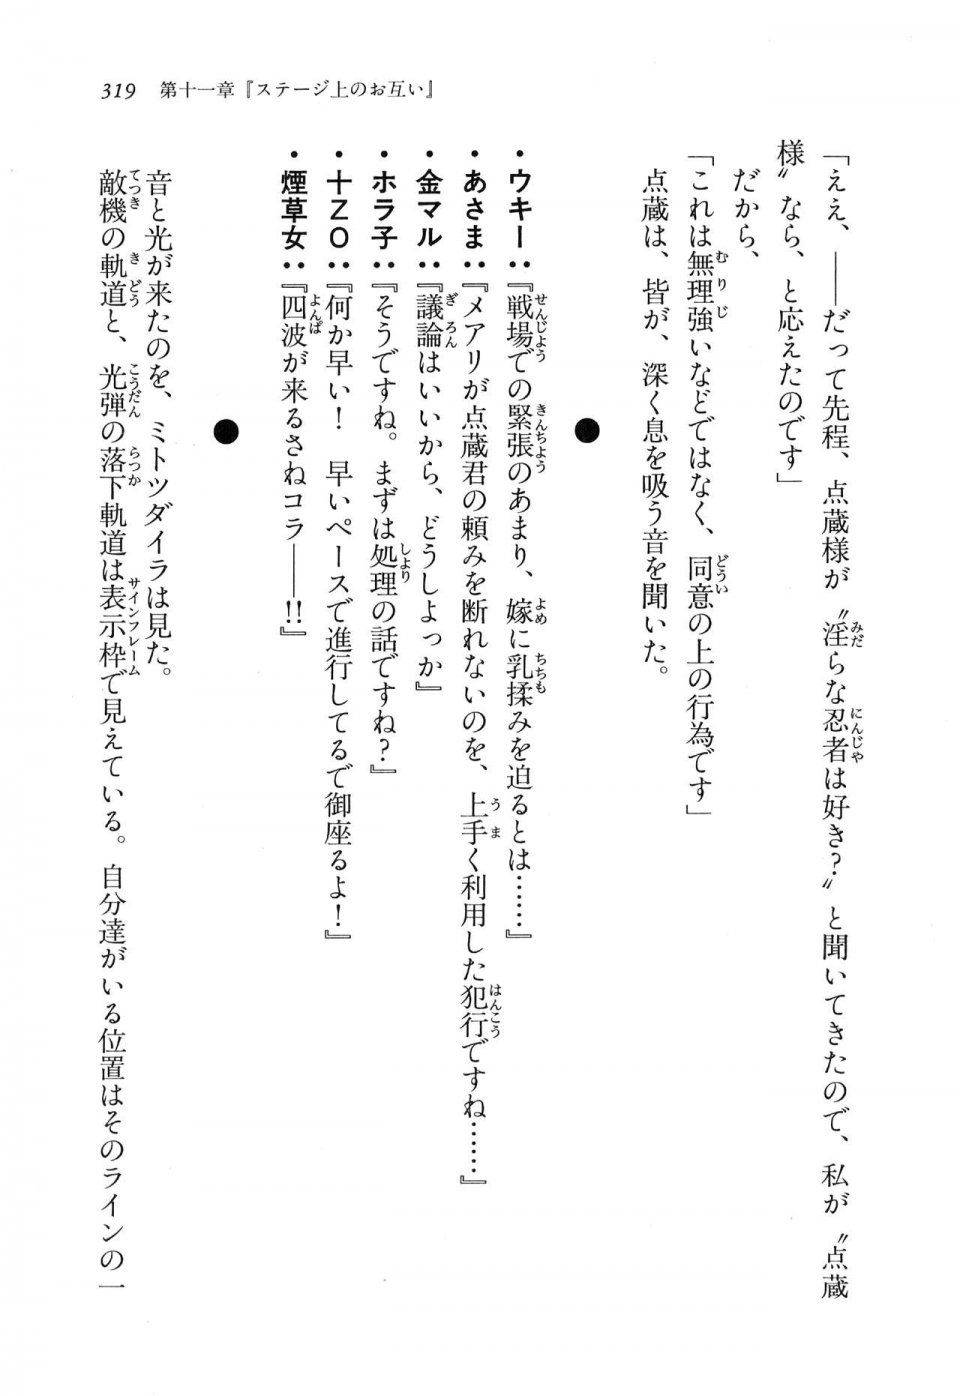 Kyoukai Senjou no Horizon LN Vol 11(5A) - Photo #319